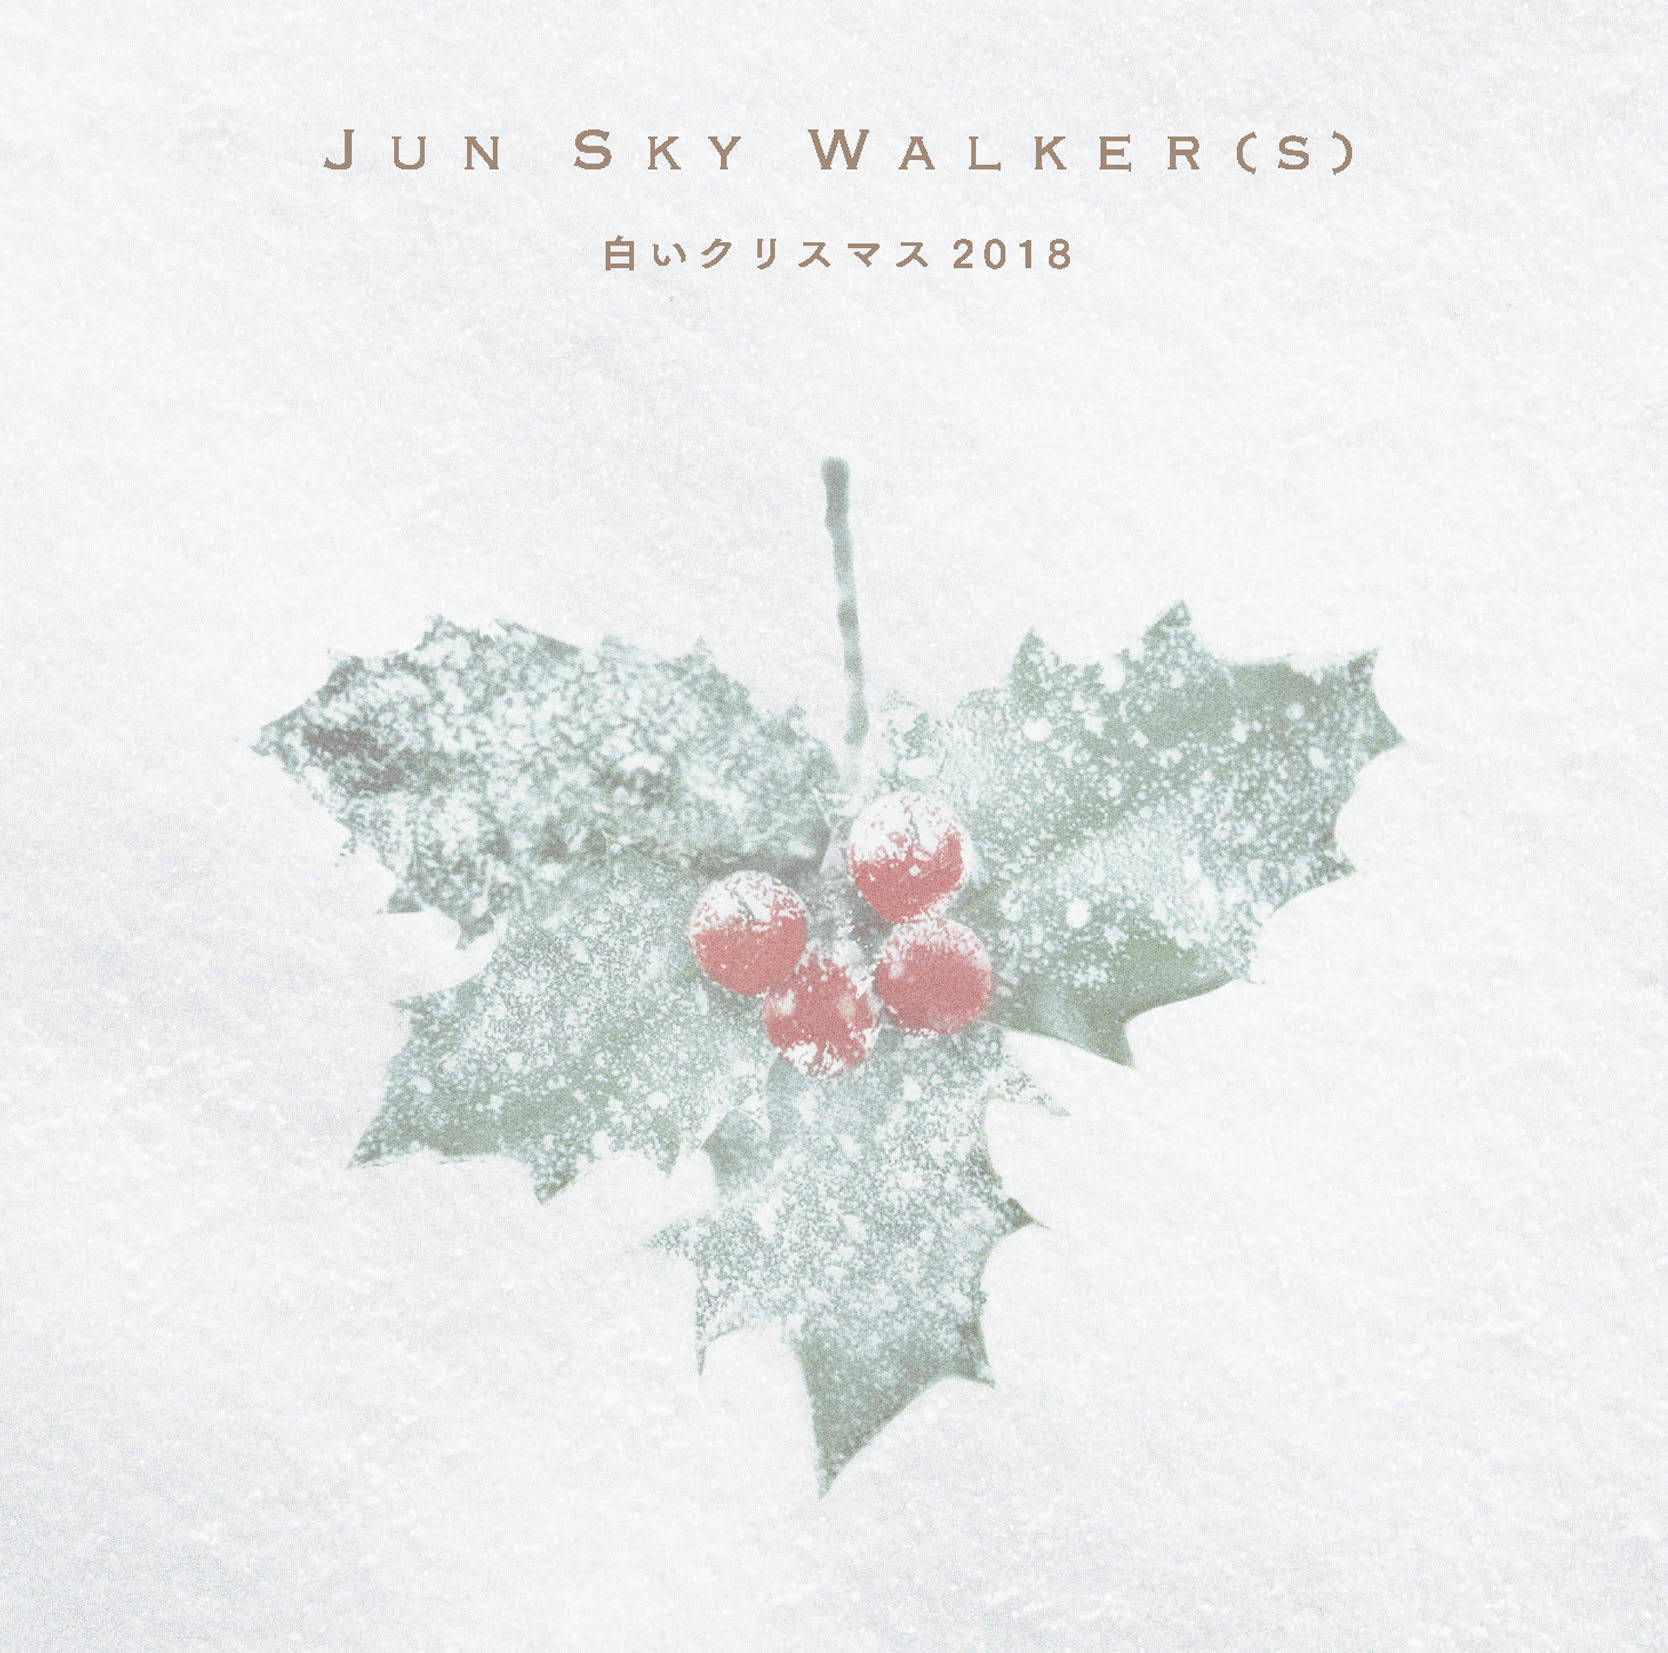 JUN SKY WALKER(S)「白いクリスマス2018」